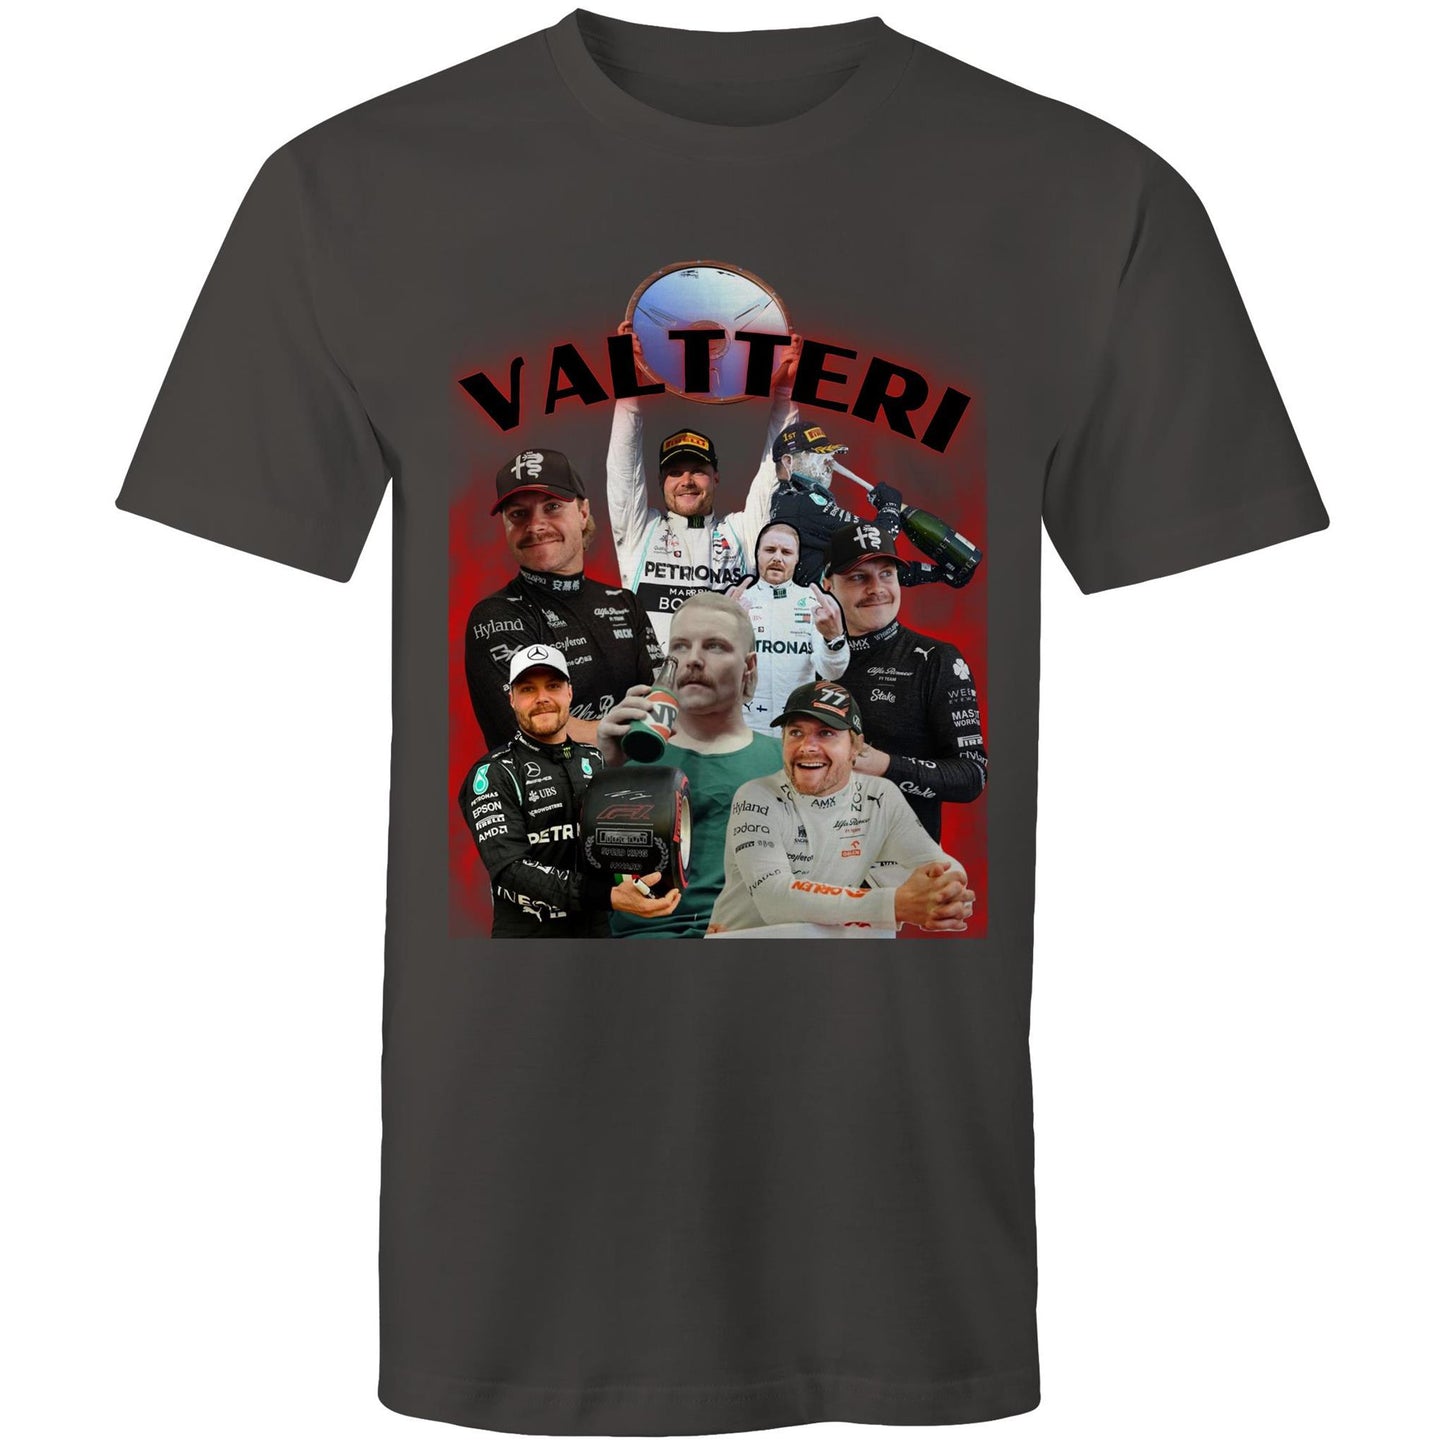 Valtteri Vintage T-Shirt